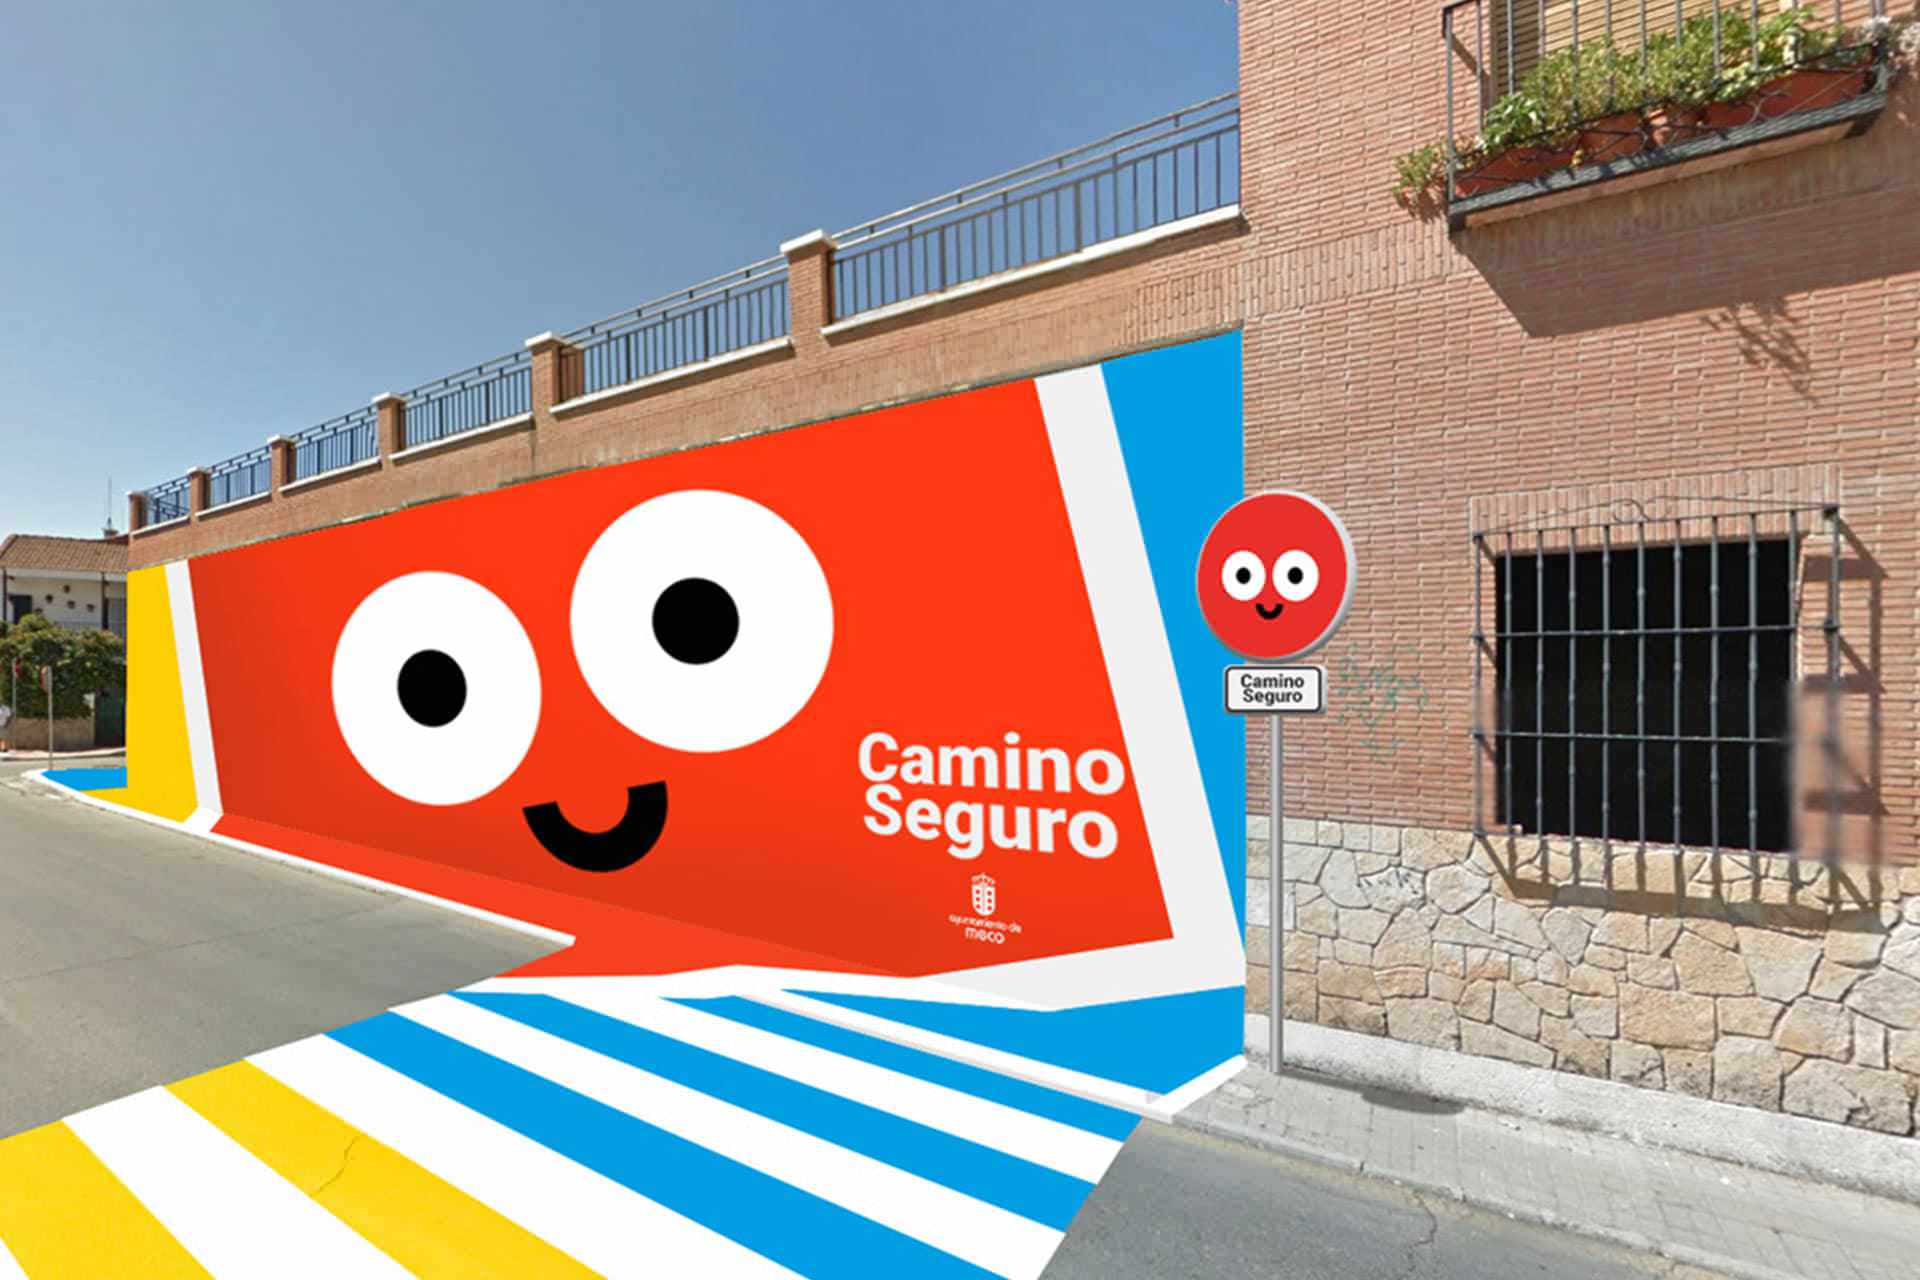 Estudio creativo y diseño gráfico creativo para proyecto de Camino Seguro, Ayuntamiento de Meco, 2016